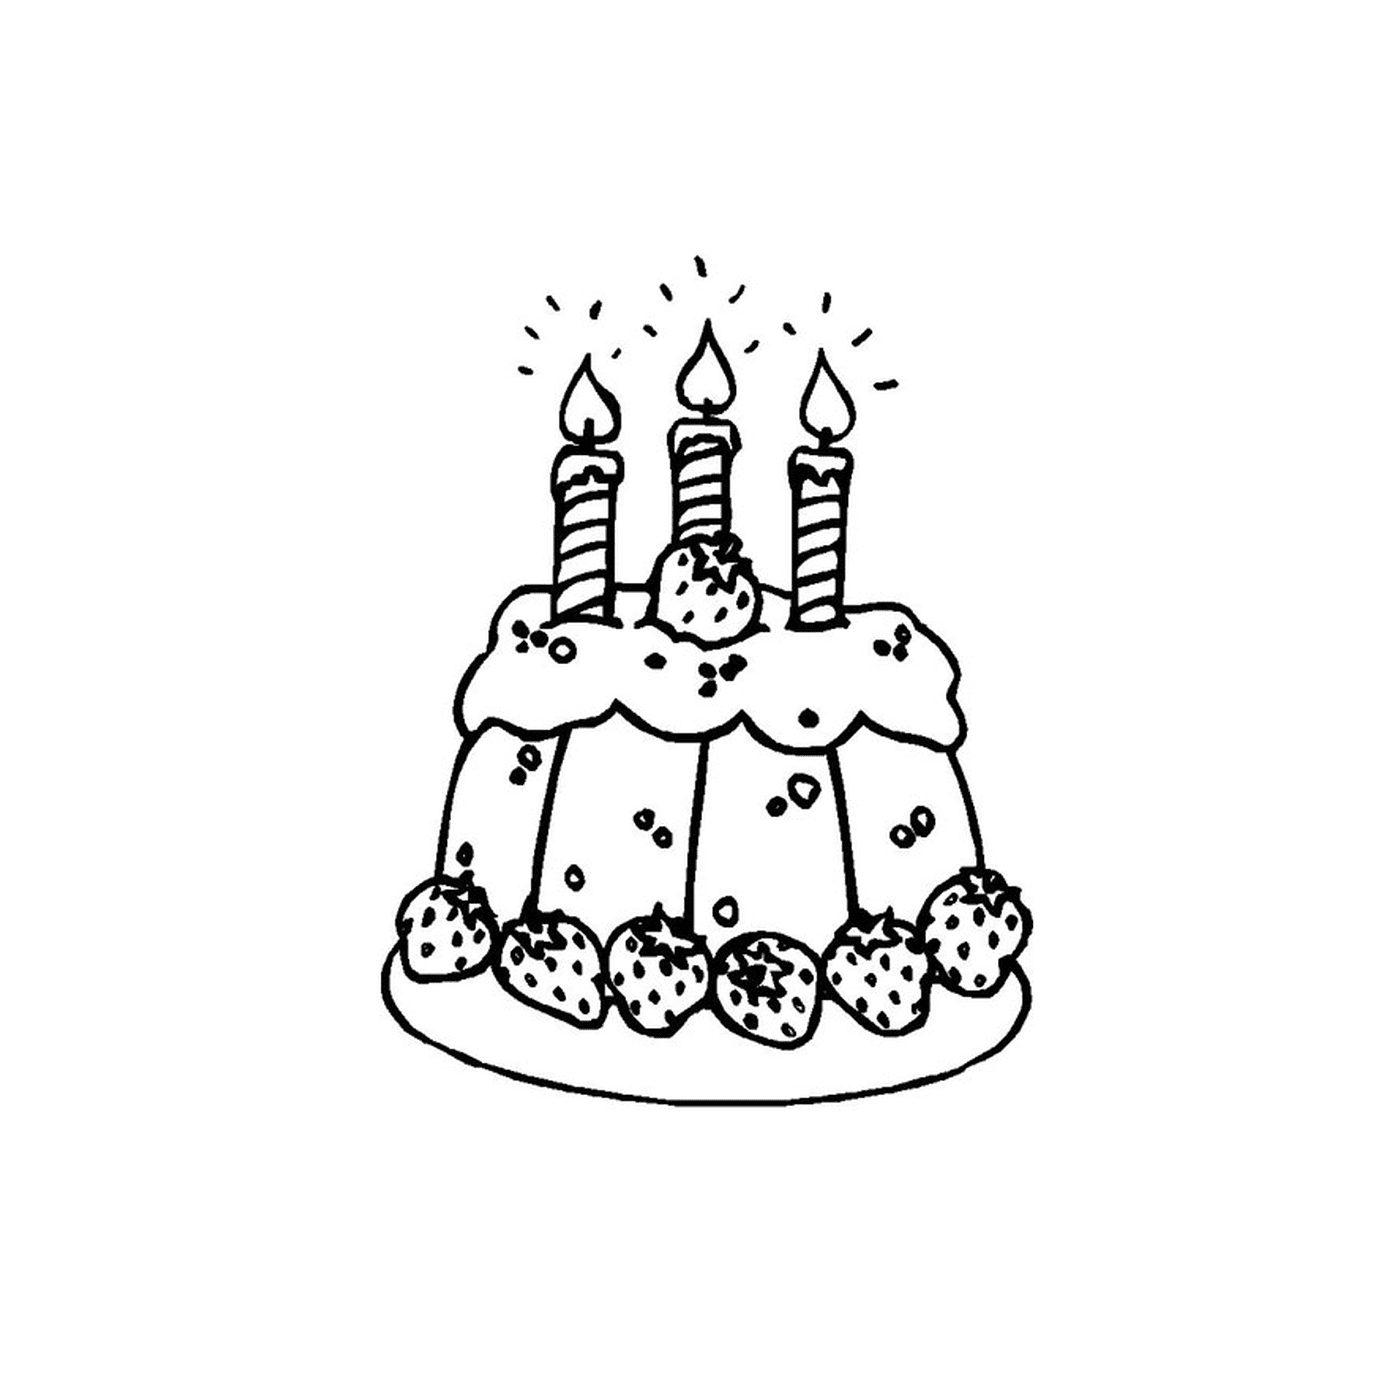  торт с тремя зажженными свечками 